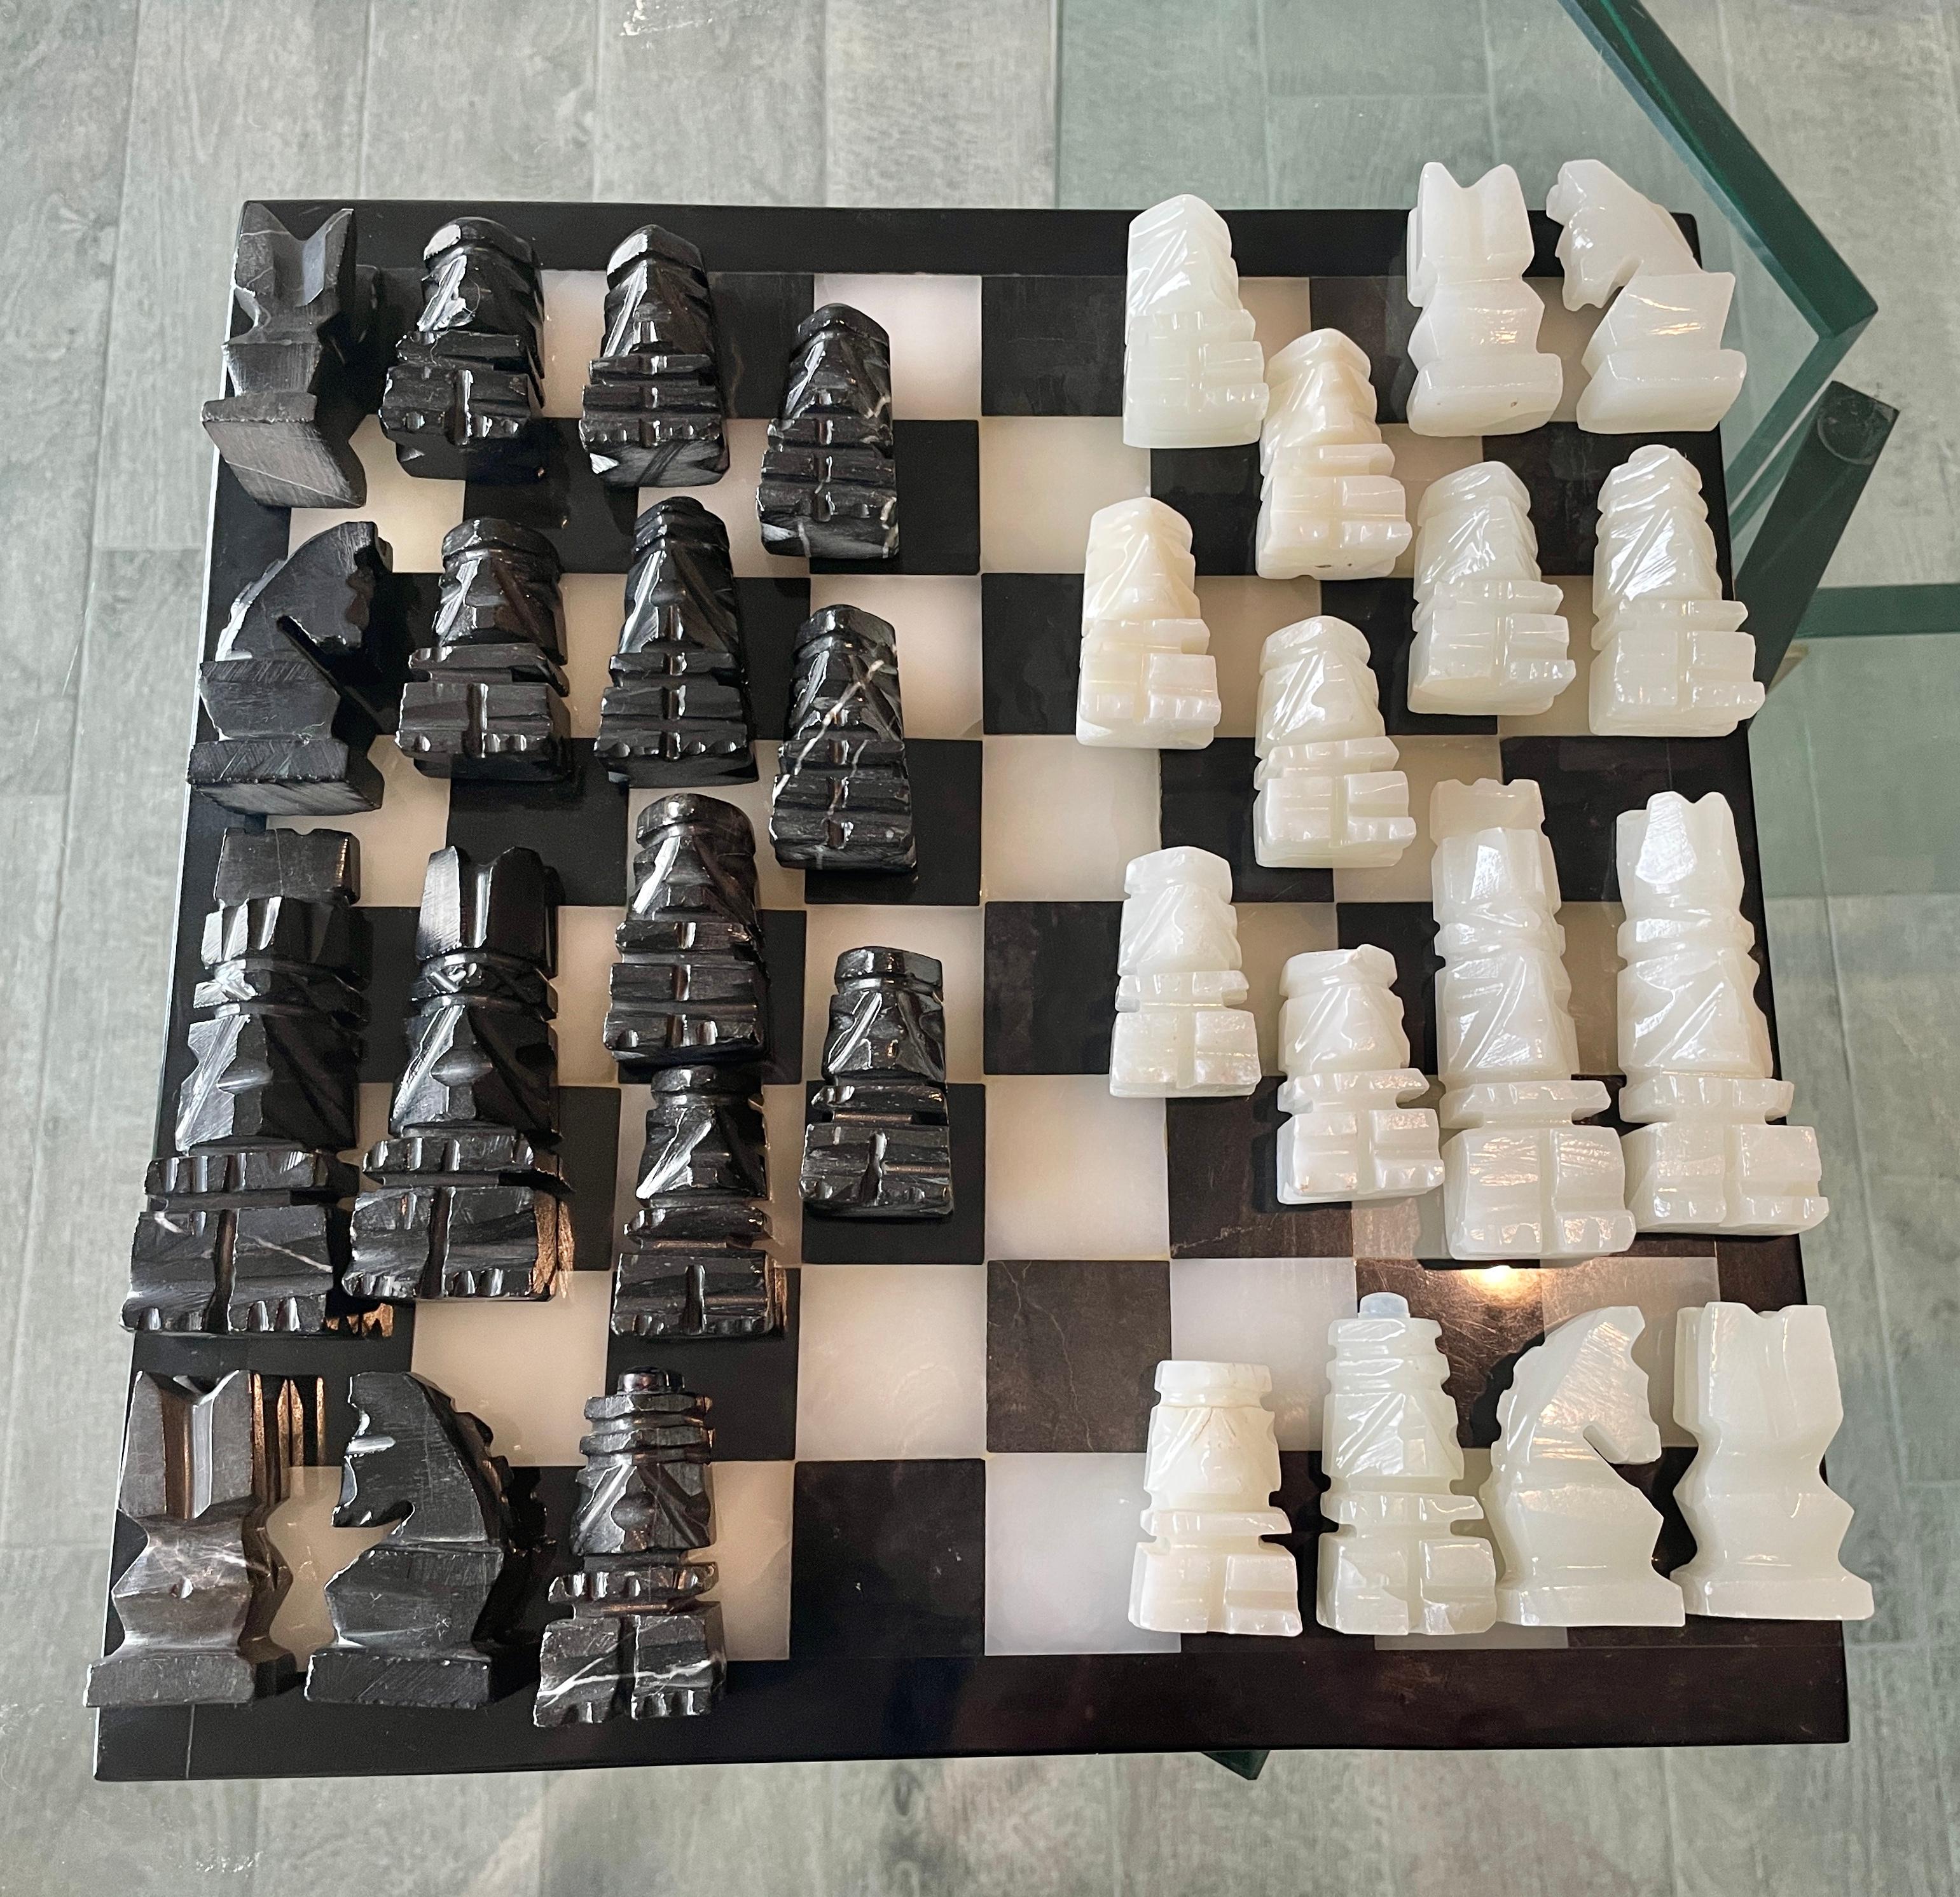 Planche d'échecs en marbre noir et blanc. Un classique pour les amateurs d'échecs qui s'intègre également parfaitement comme décoration d'intérieur.